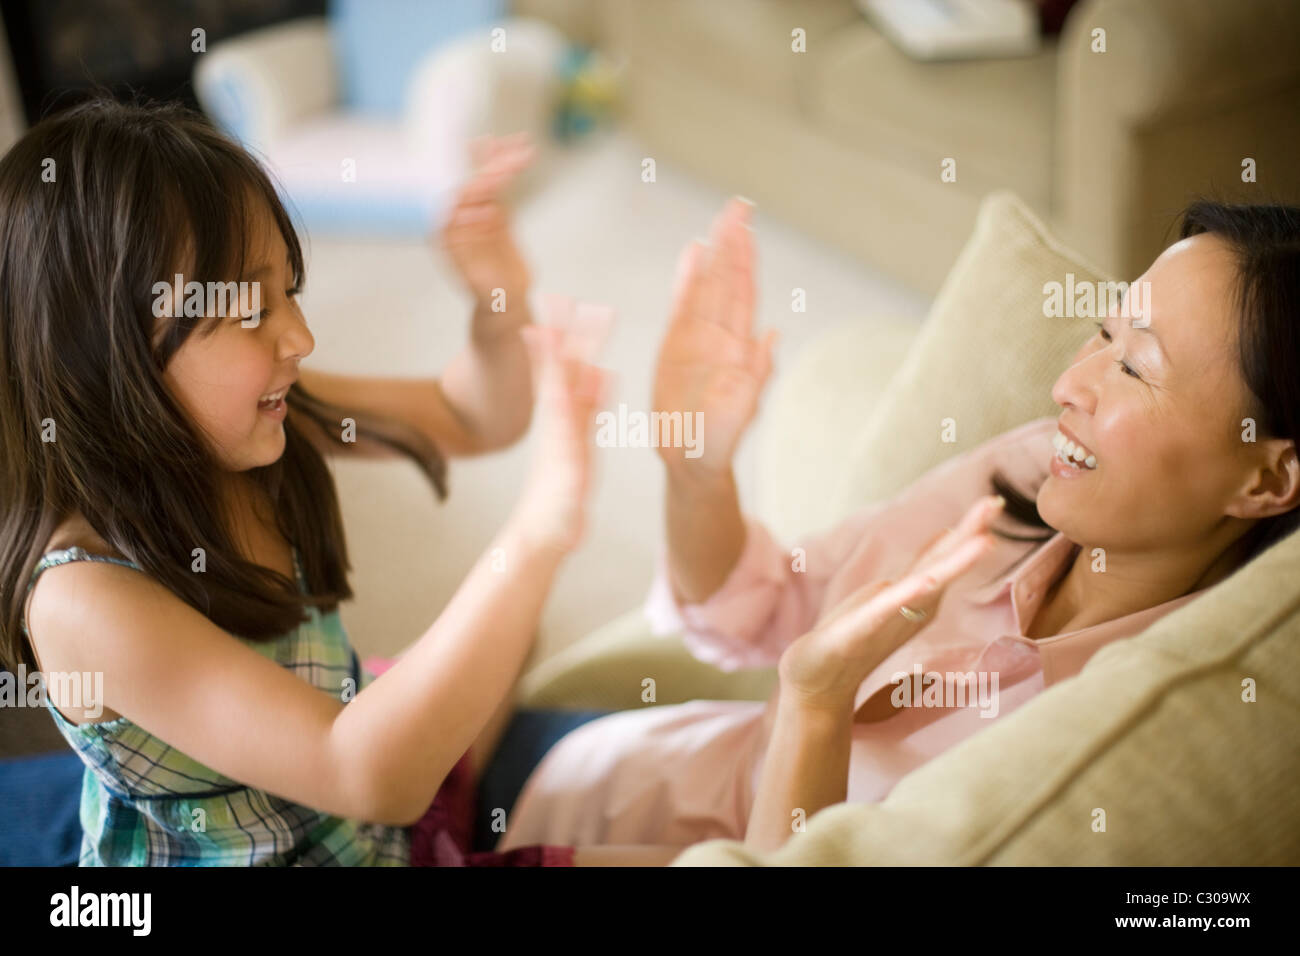 Mère et fille asiatique jouant pattycake Banque D'Images